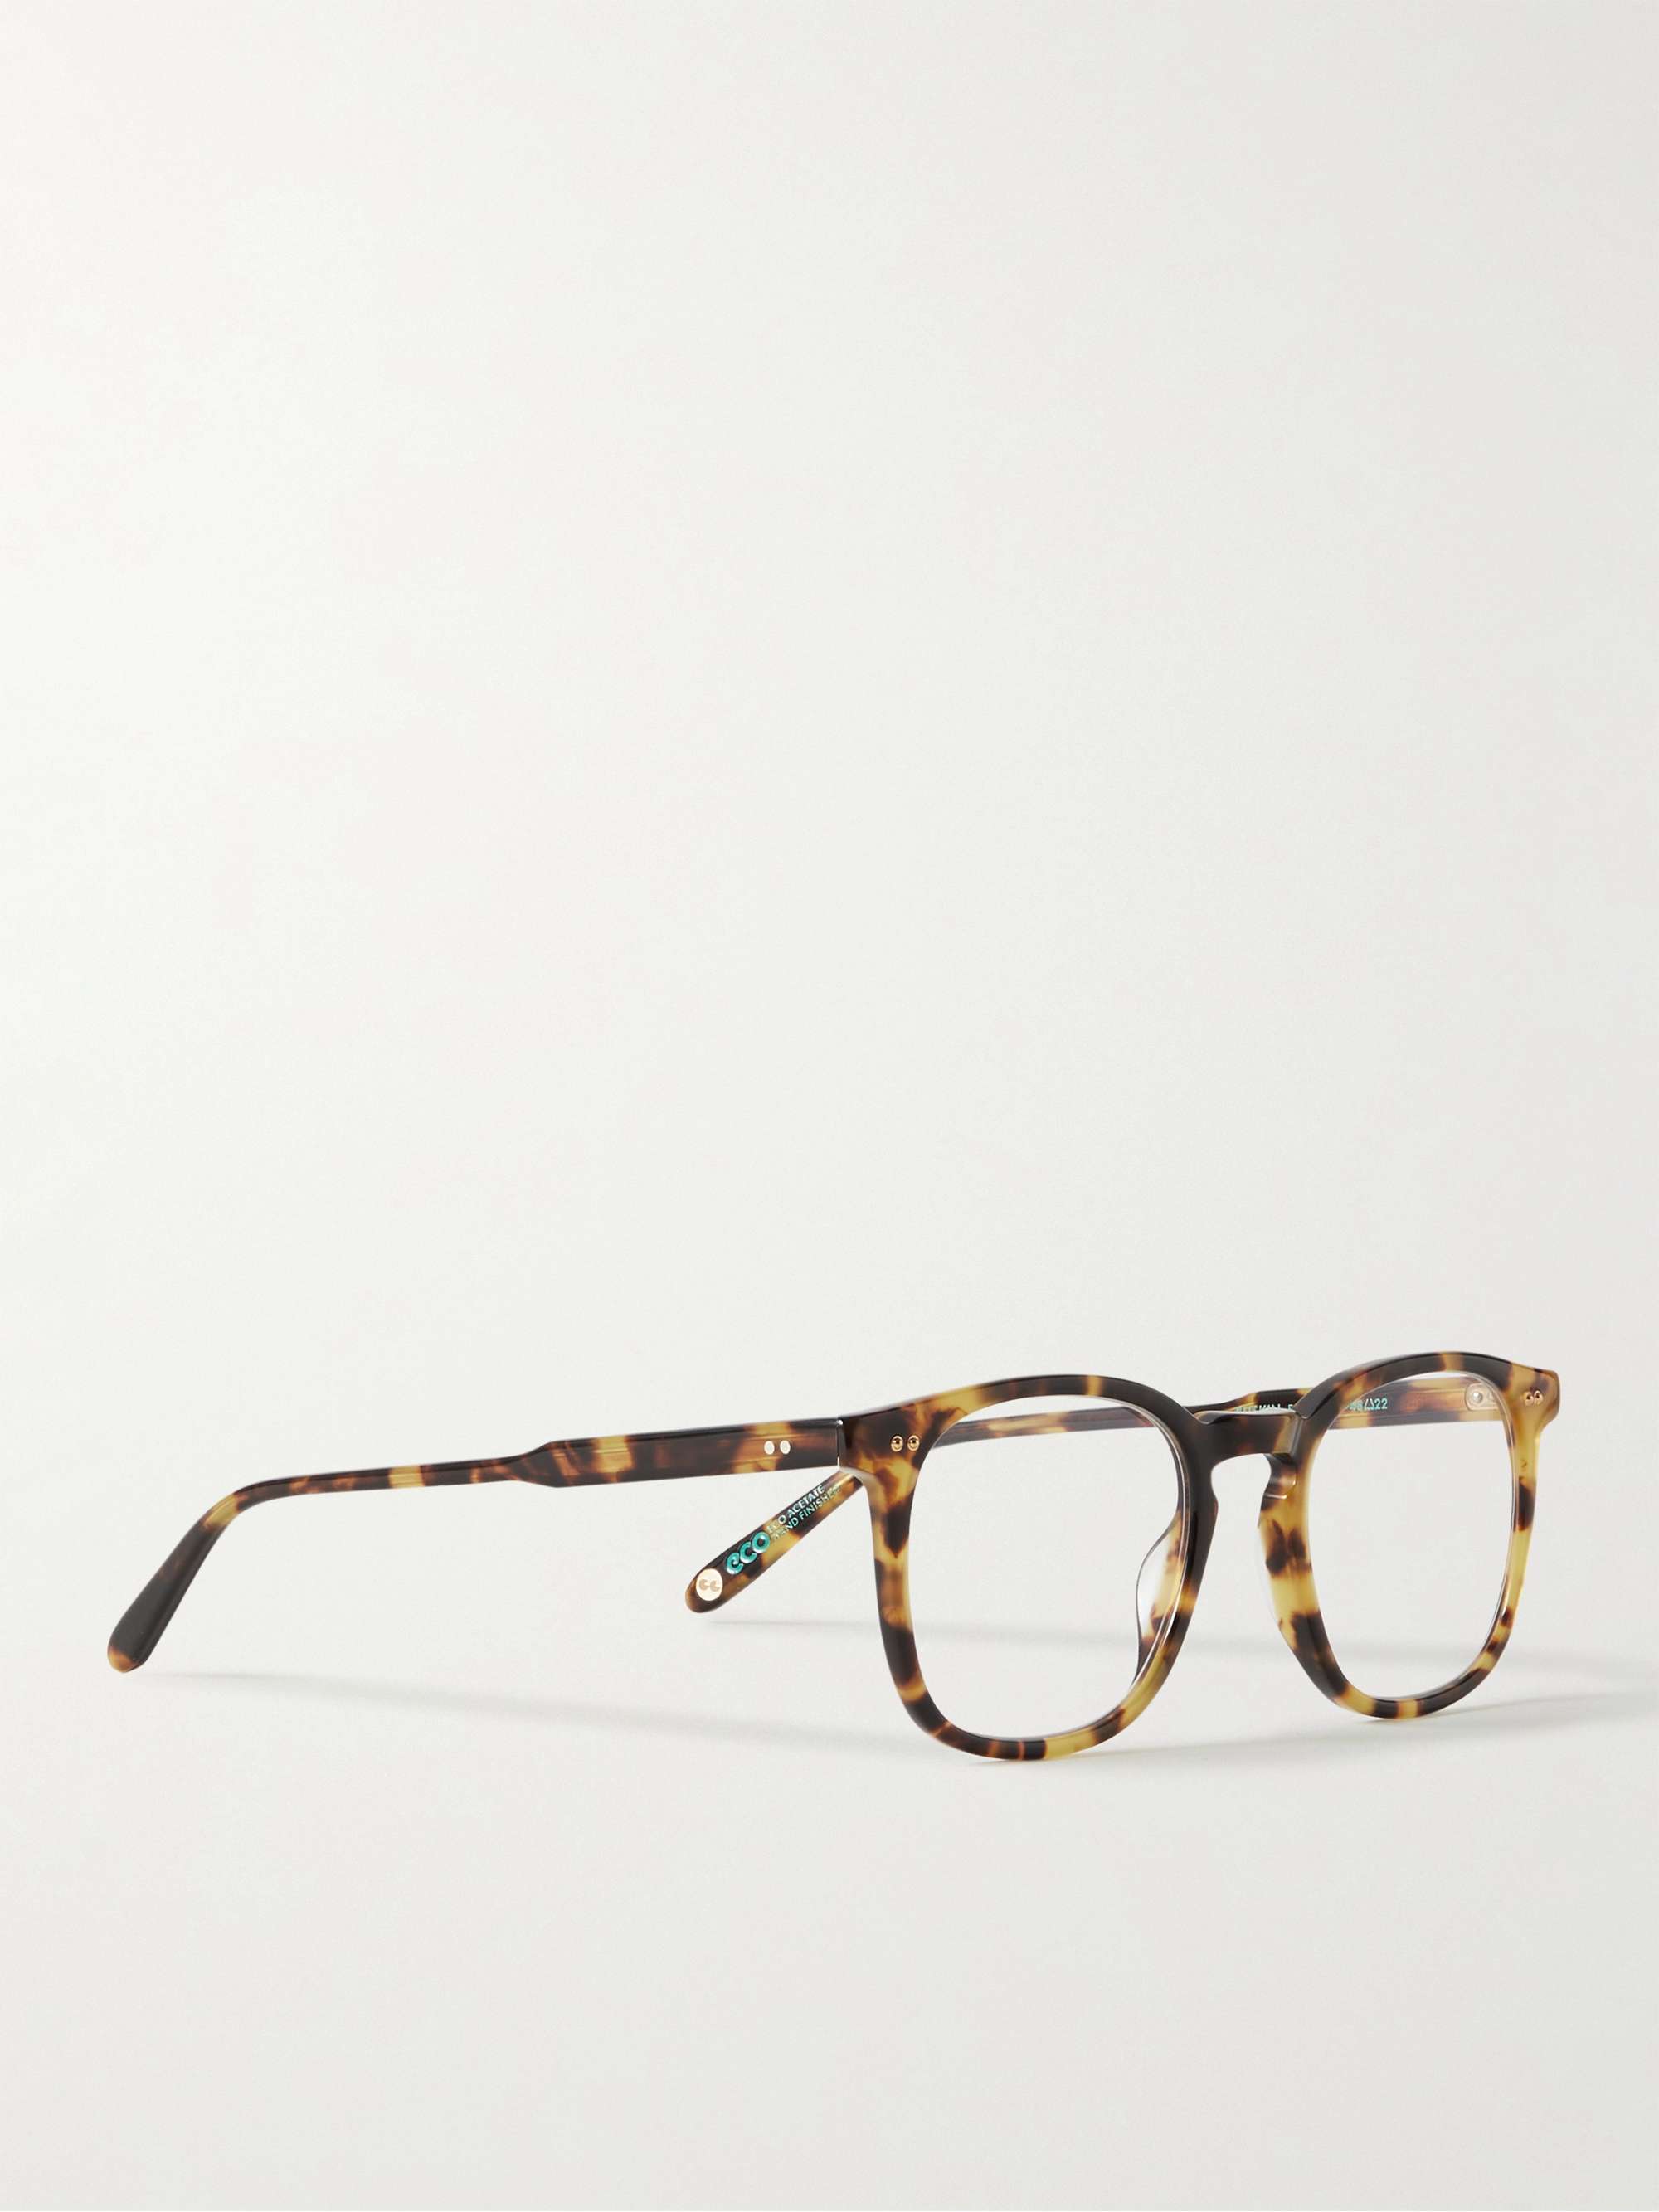 GARRETT LEIGHT CALIFORNIA OPTICAL Ruskin 48 D-Frame Tortoiseshell Acetate Optical Glasses